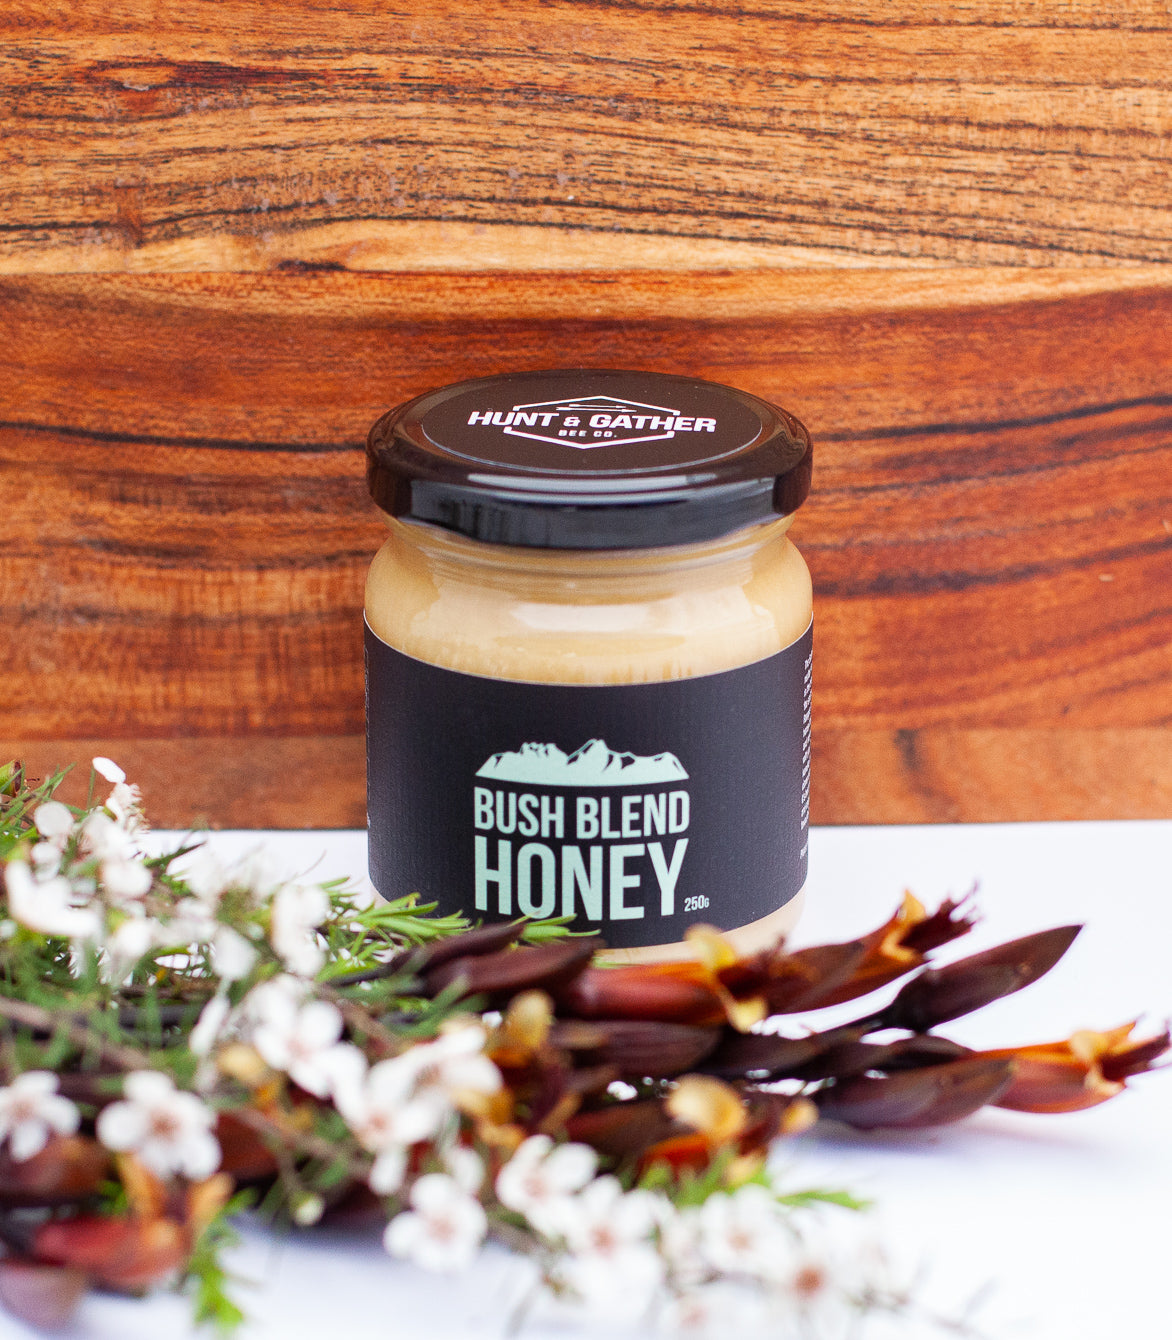 Bush Blend Honey